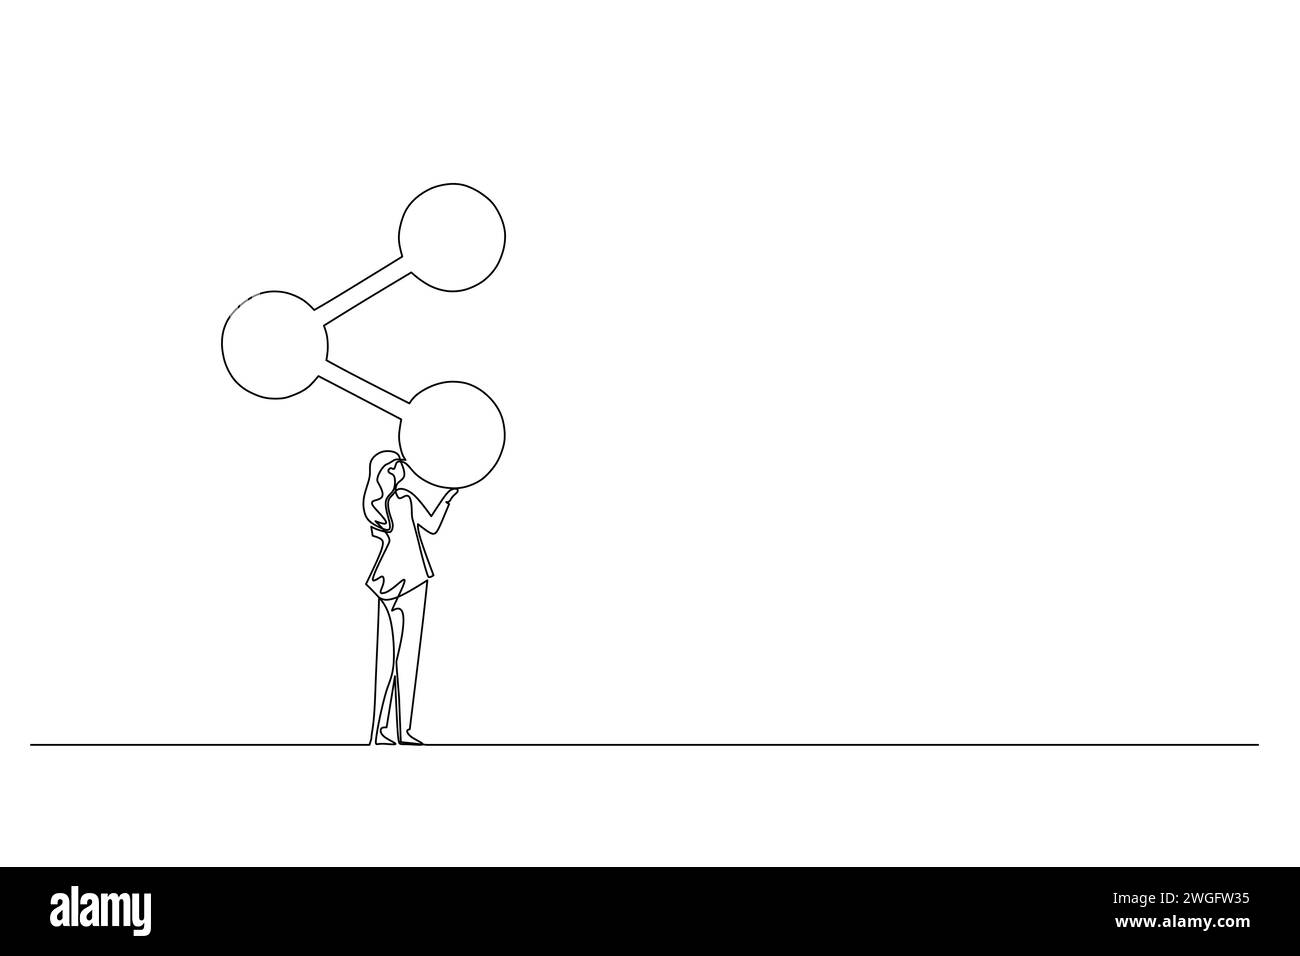 Dibujo lineal continuo de una mujer joven analizando la estructura molecular. Mujer en traje mirando un diagrama químico. Persona de negocios estudios complejos Ilustración del Vector